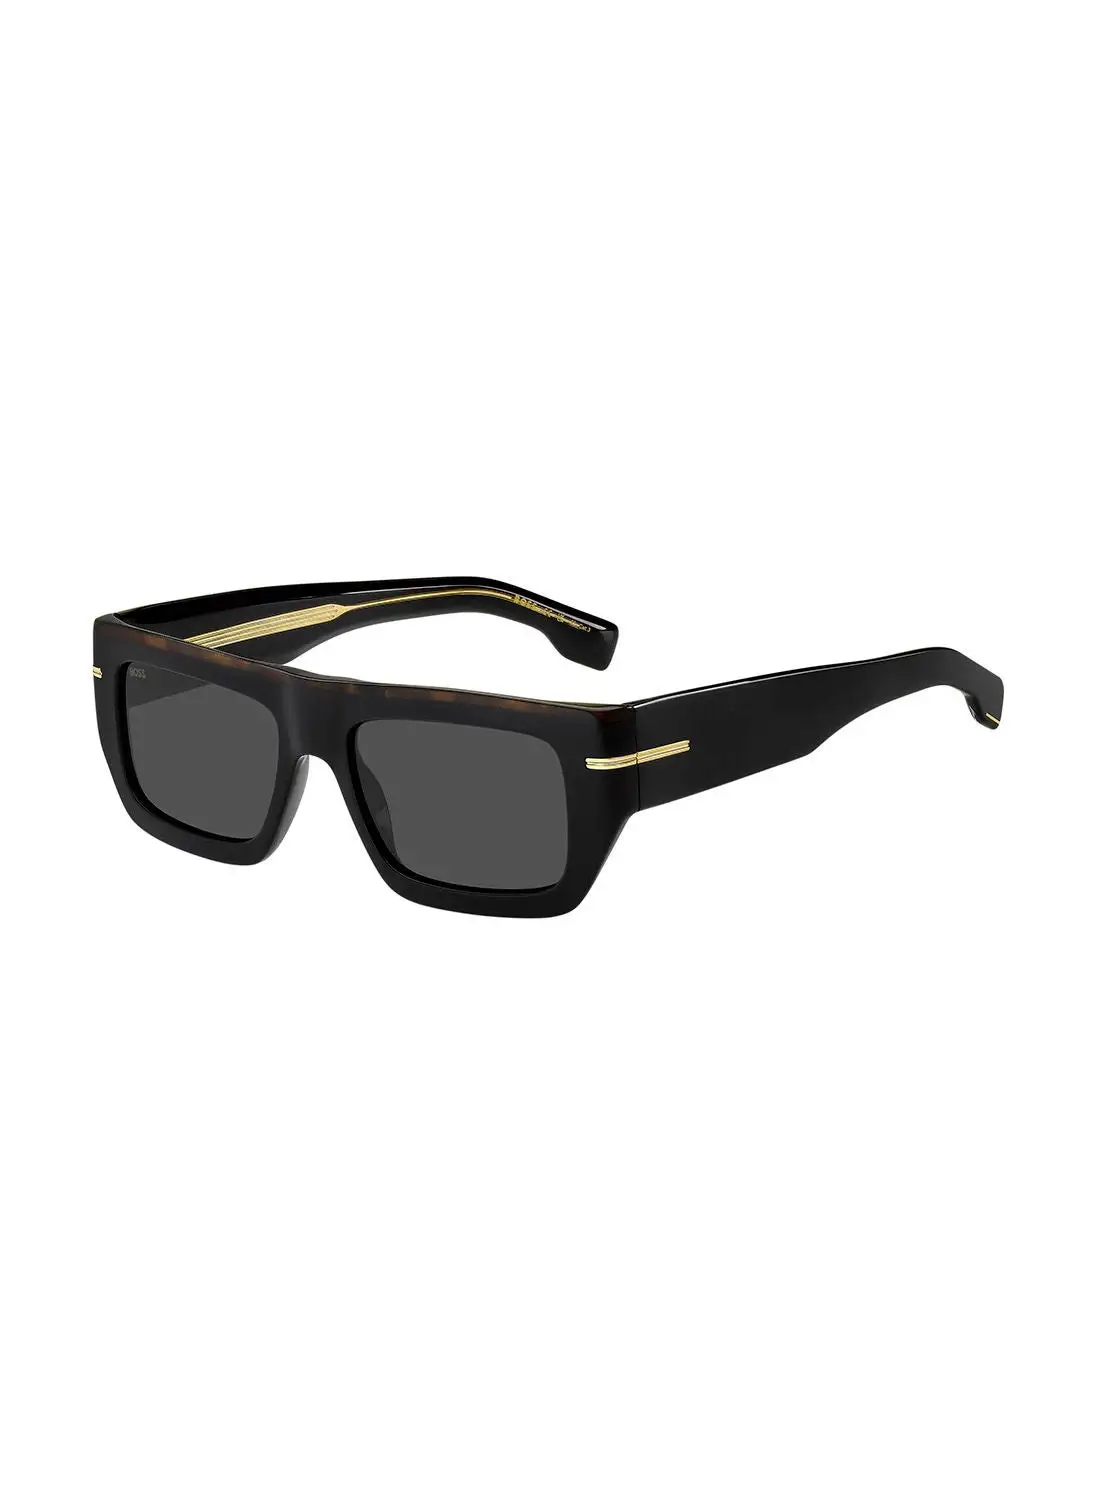 HUGO BOSS Men's UV Protection Sunglasses - Boss 1502/S Blk Havan 54 - Lens Size: 54 Mm